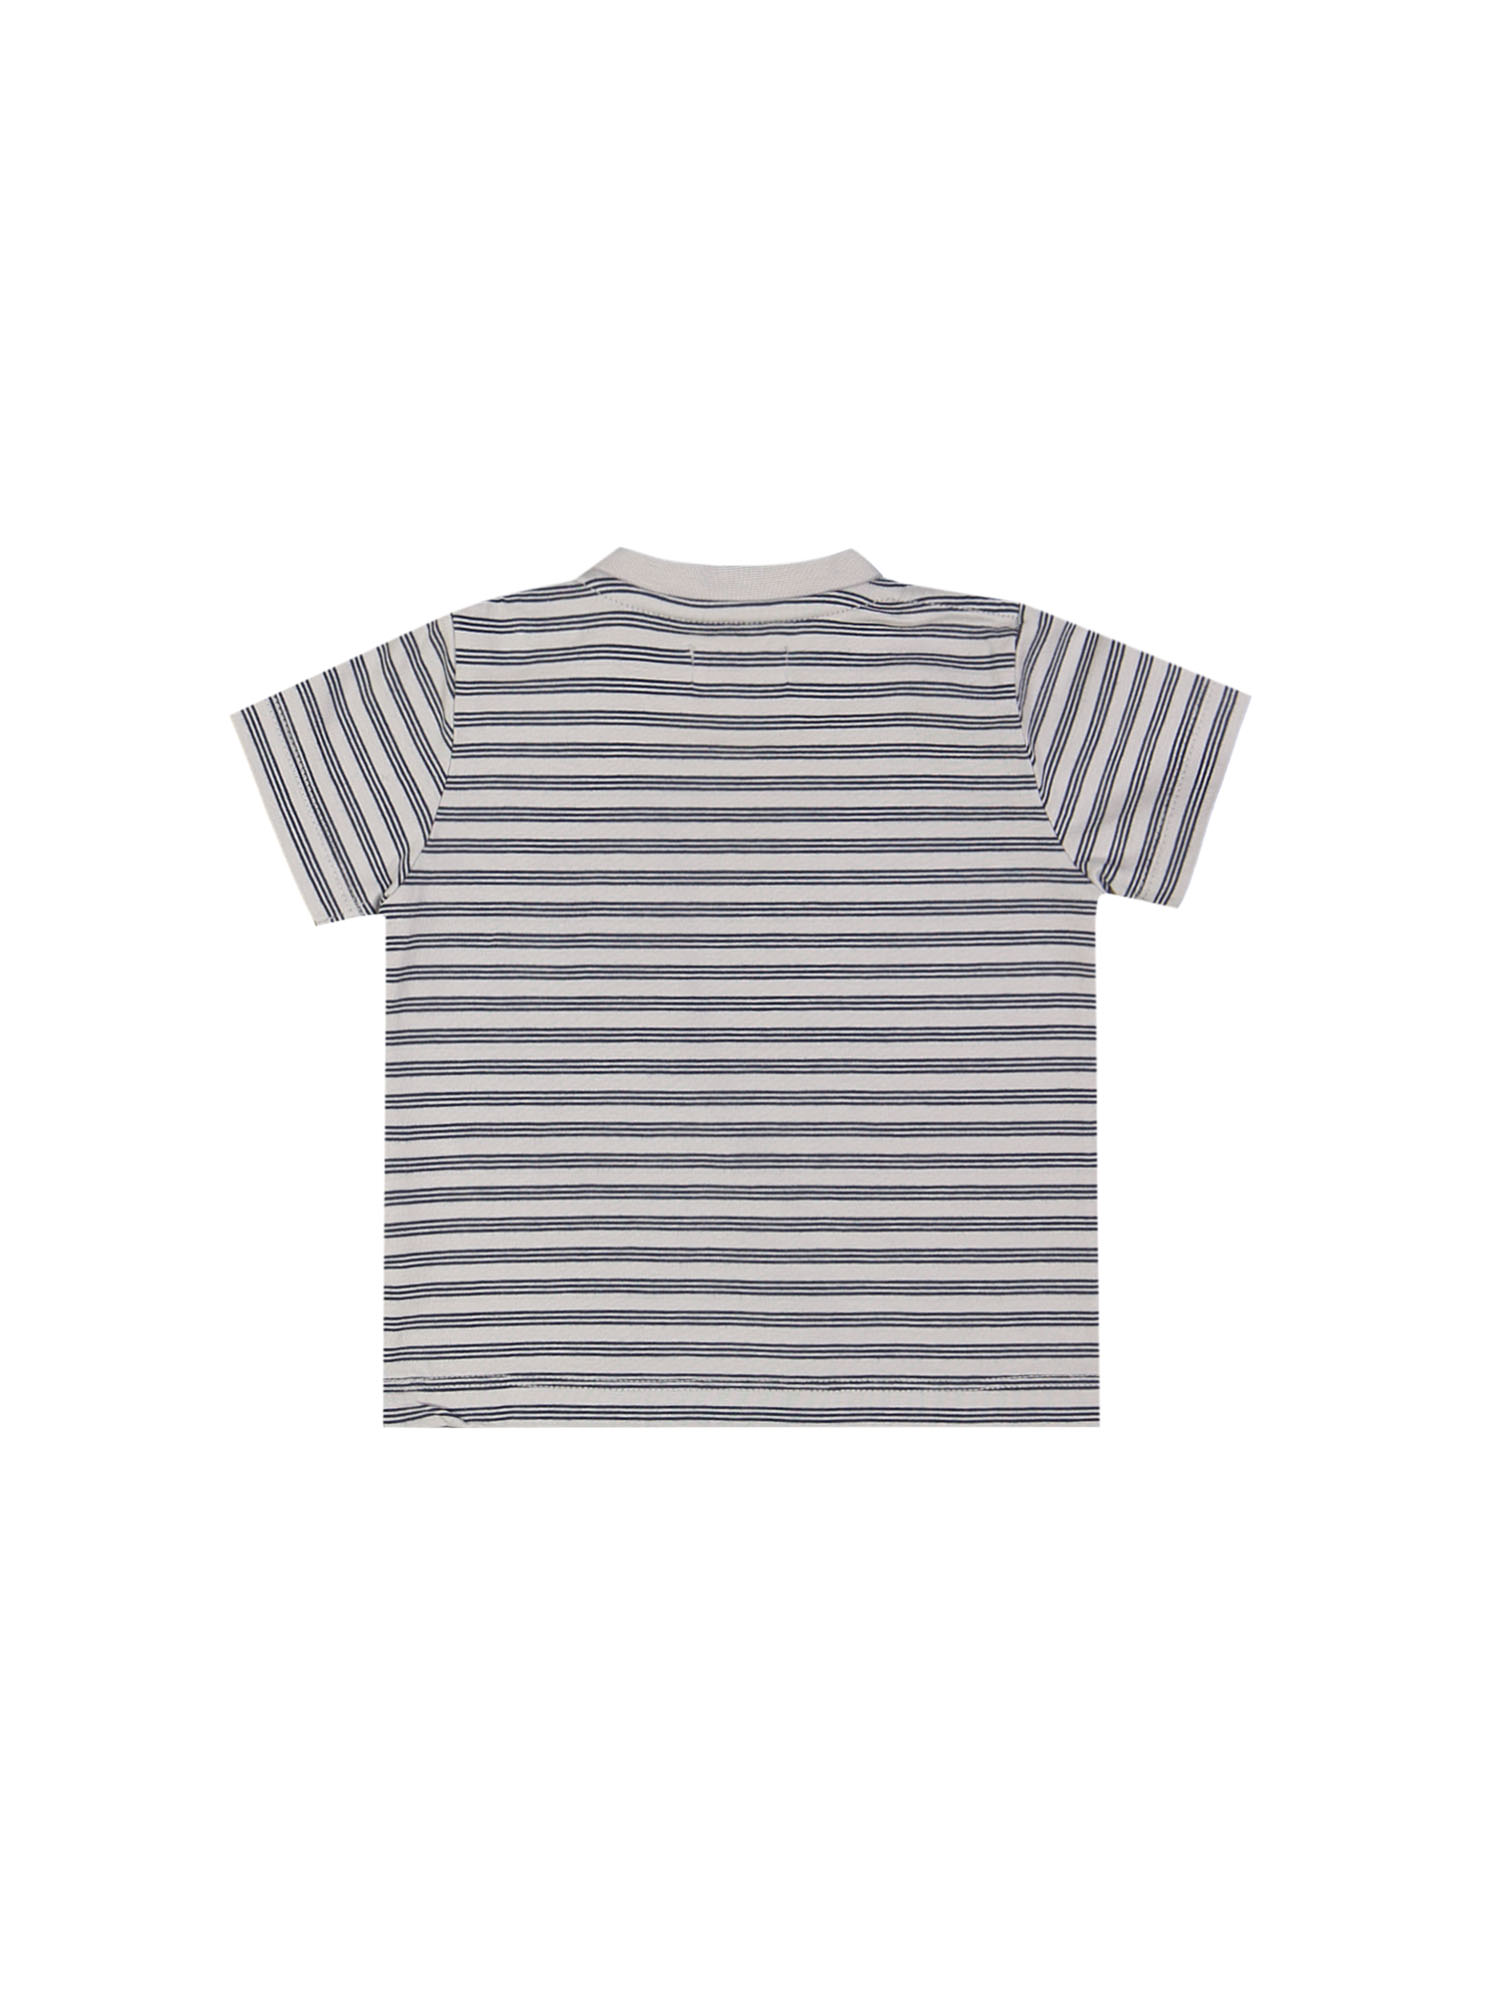 T-shirt mini ghostdog striped blauwgrijs 03m